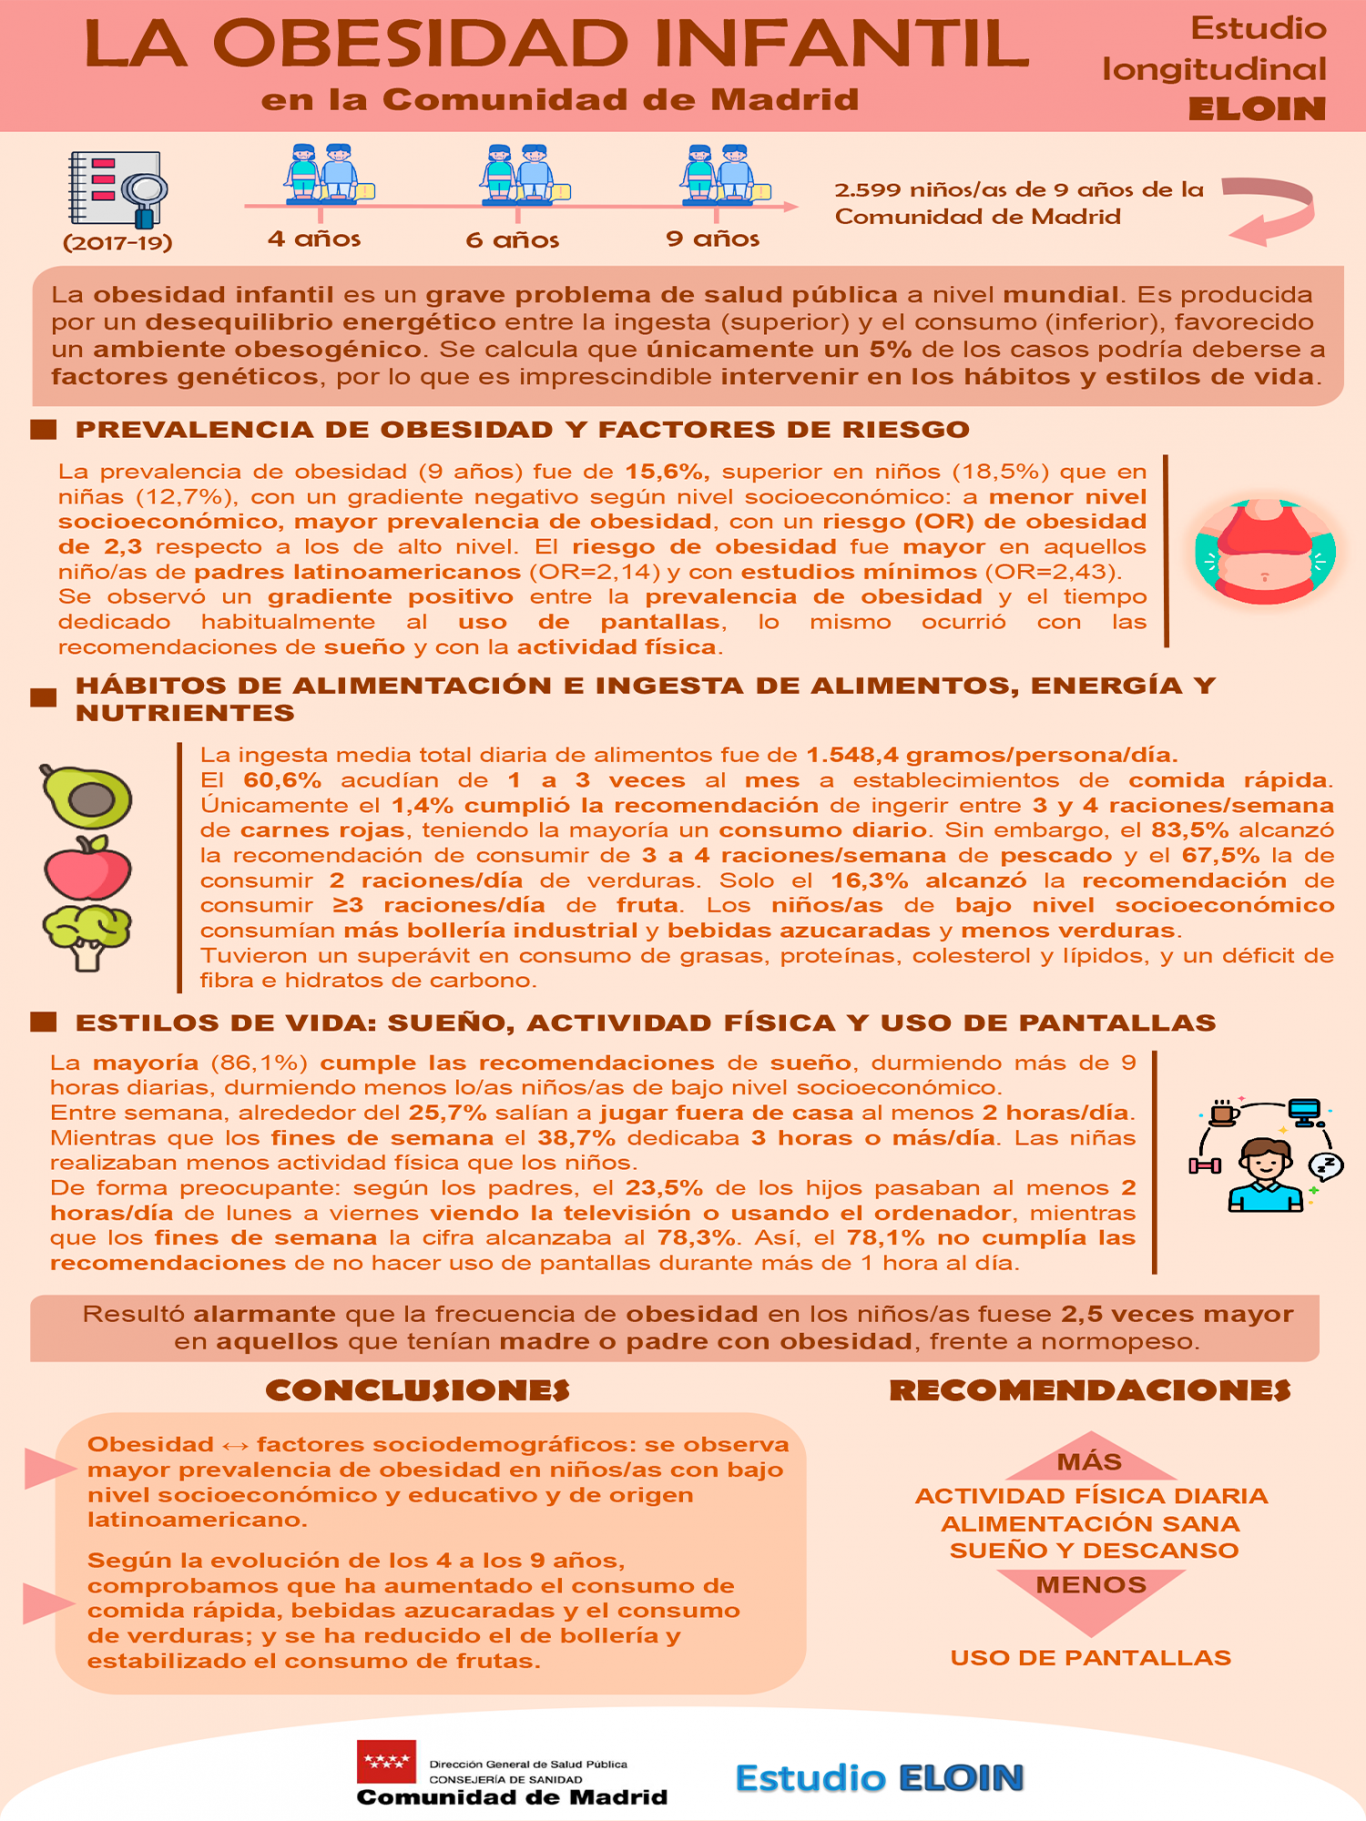 Cartel en el que se detallan las conclusiones y recomendaciones del estudio ELOIN sobre la obesidad infantil en la Comunidad de Madrid